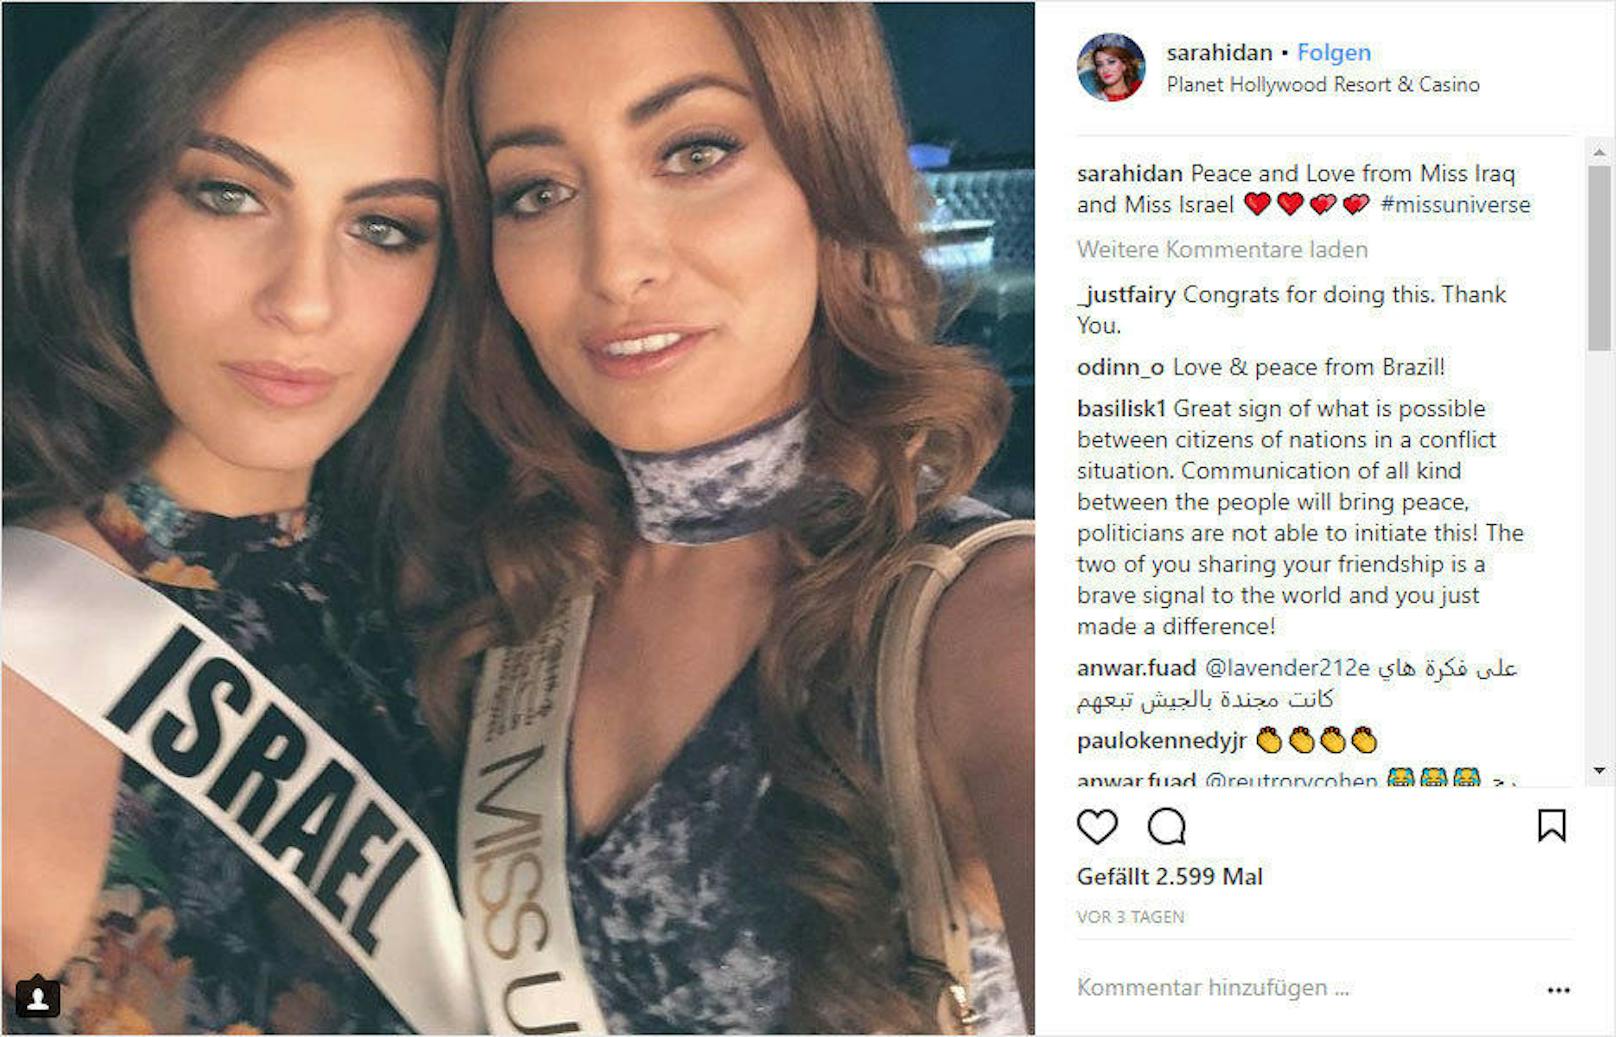 Miss Irak tat es ihr gleich und postete ein ähnliches Selfie. "Frieden und Liebe von Miss Irak und Miss Israel", stand dabei. Später entschuldigte sich Miss Irak Sarah Idan für den Post.